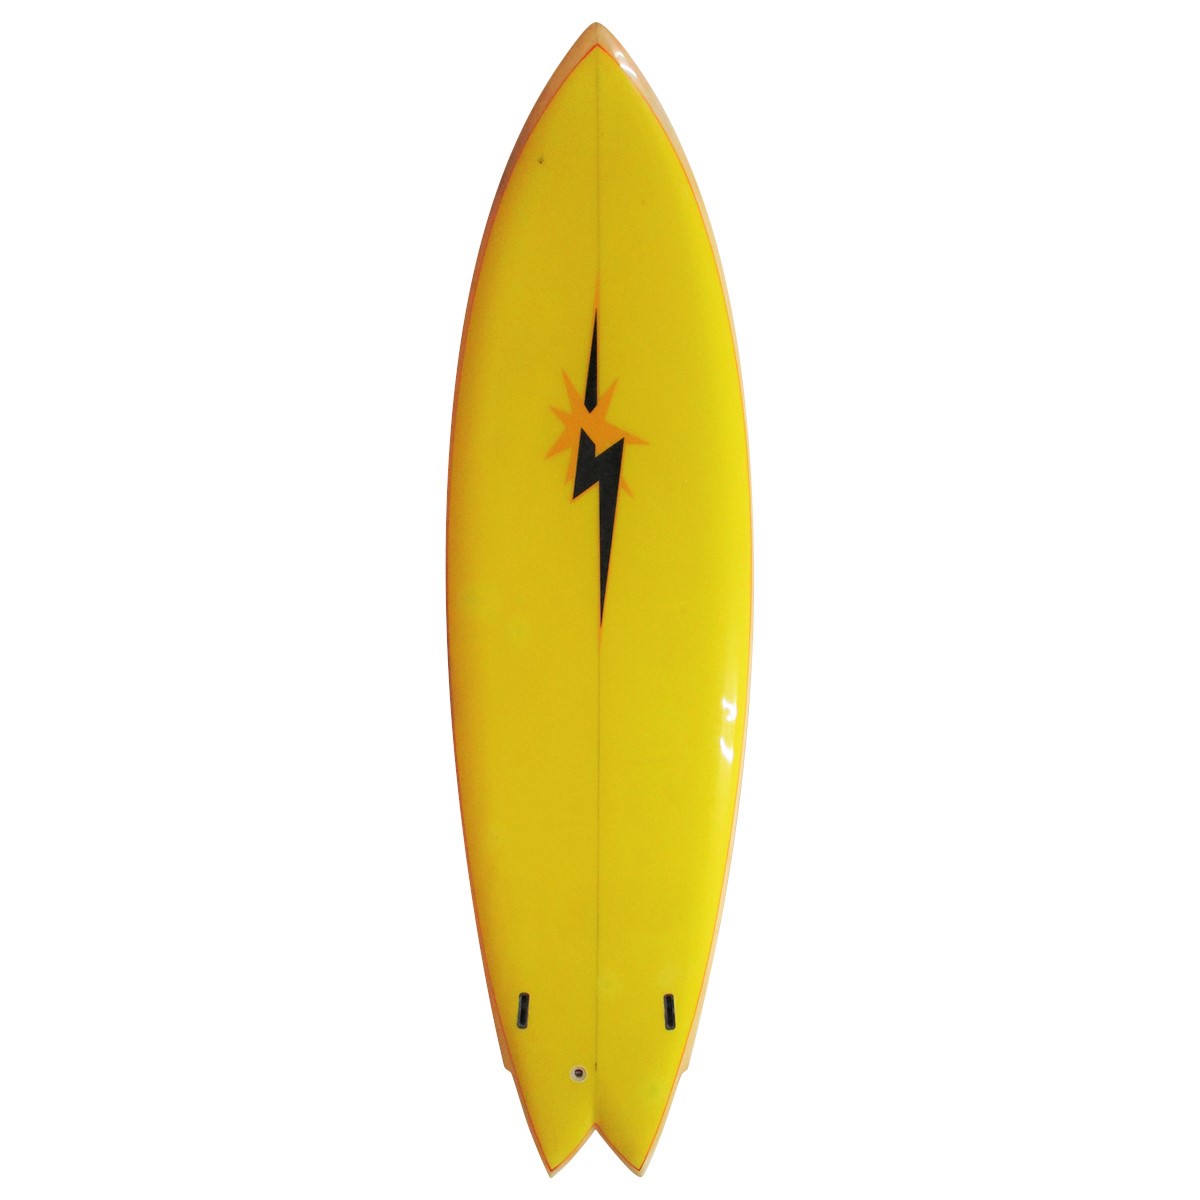 VINTAGE BOARD | 販売中の商品 | USED SURF×SURF MARKET